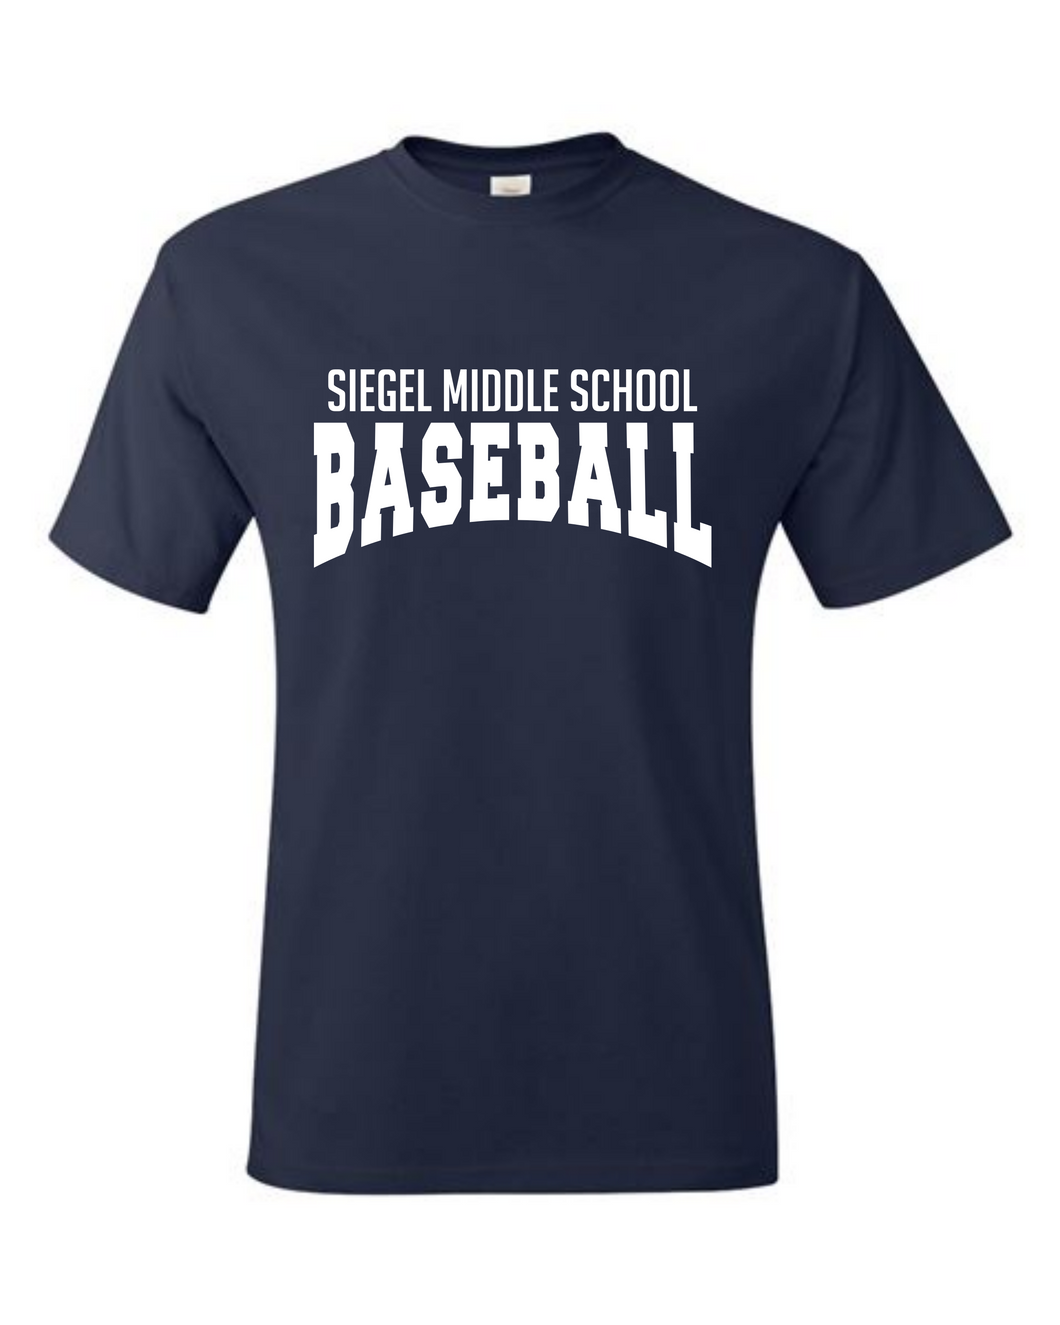 Siegel Middle School Baseball Tshirt